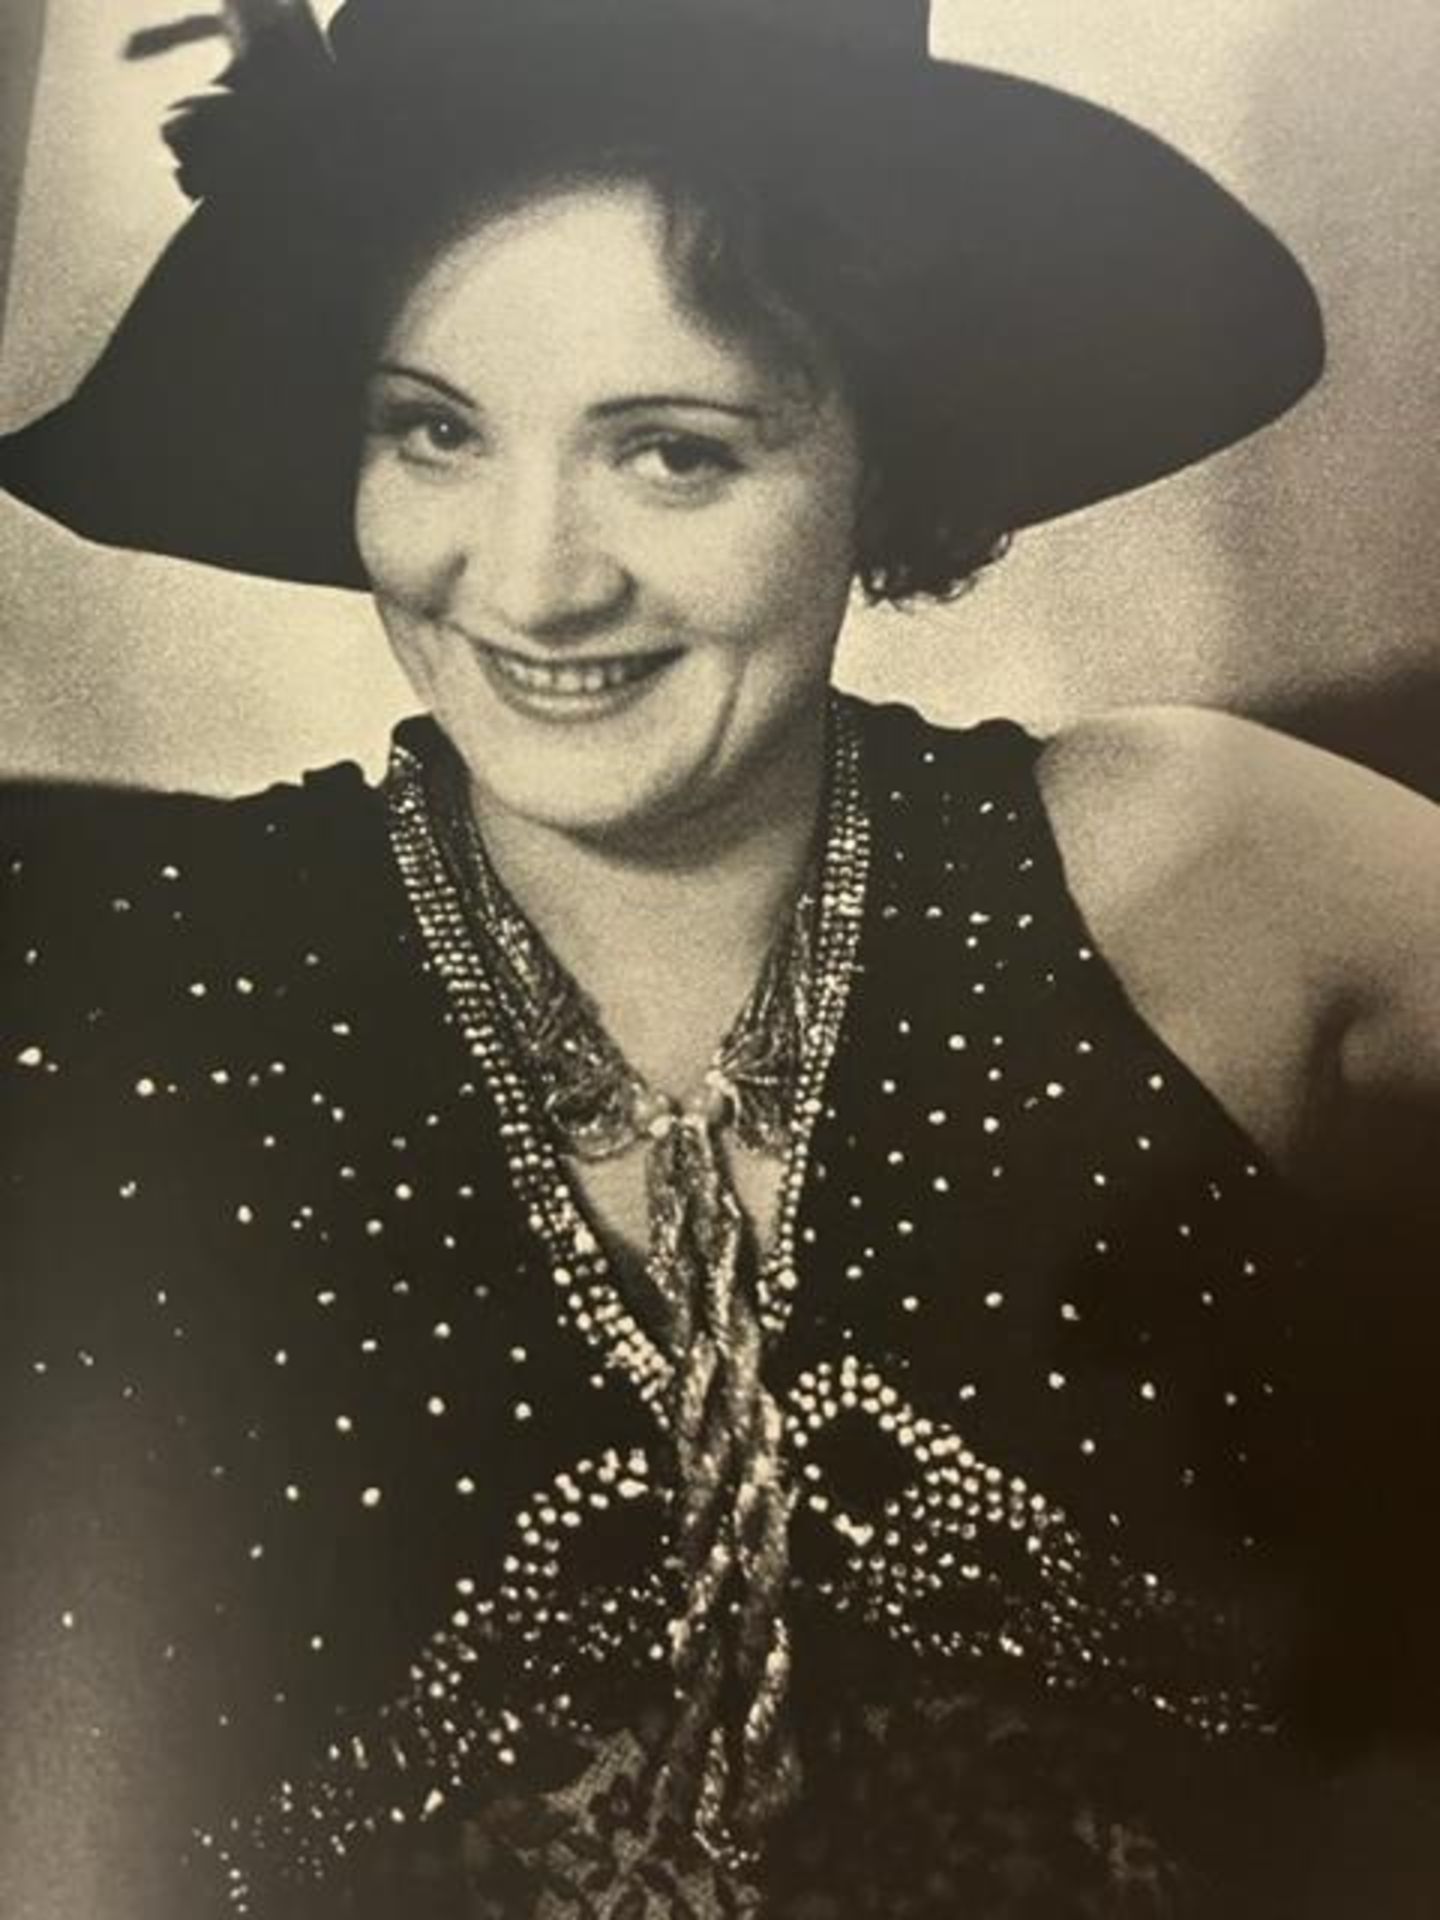 Alfred Eisenstaedt "Marlene Dietrich" Print. - Image 4 of 6